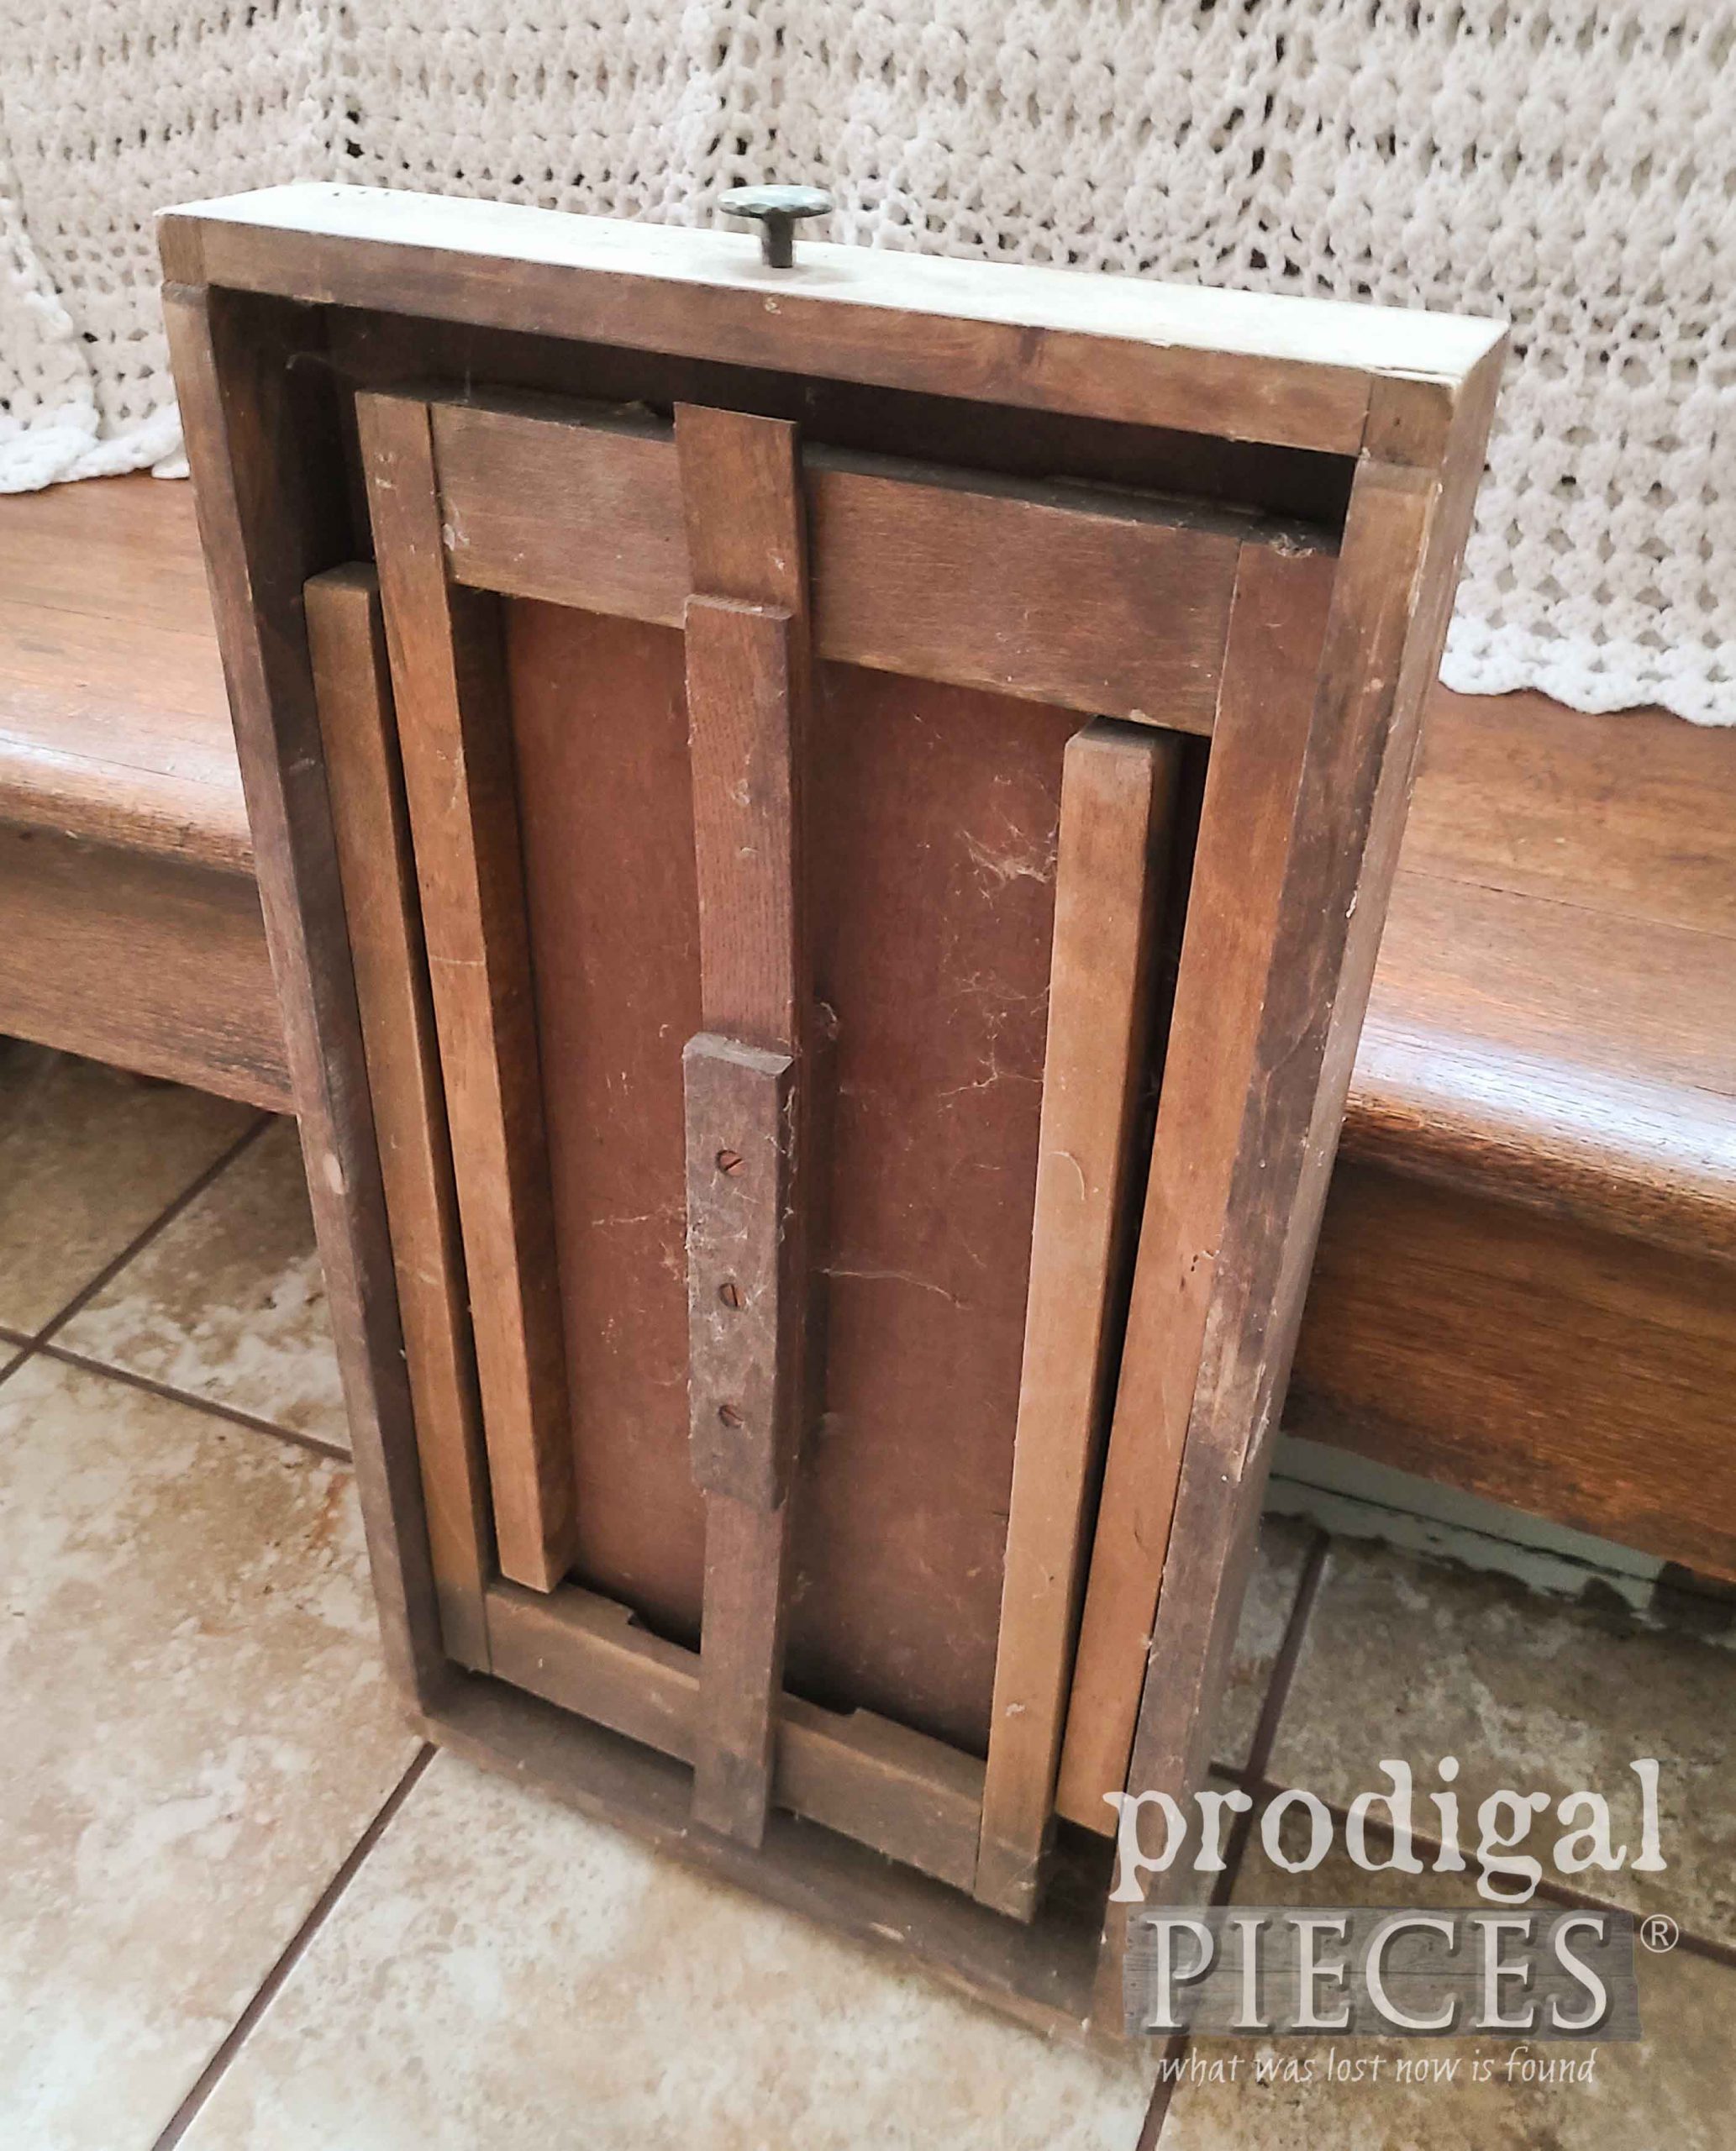 Vintage Folding Table Legs Underneath | Prodigal Pieces | prodigalpieces.com